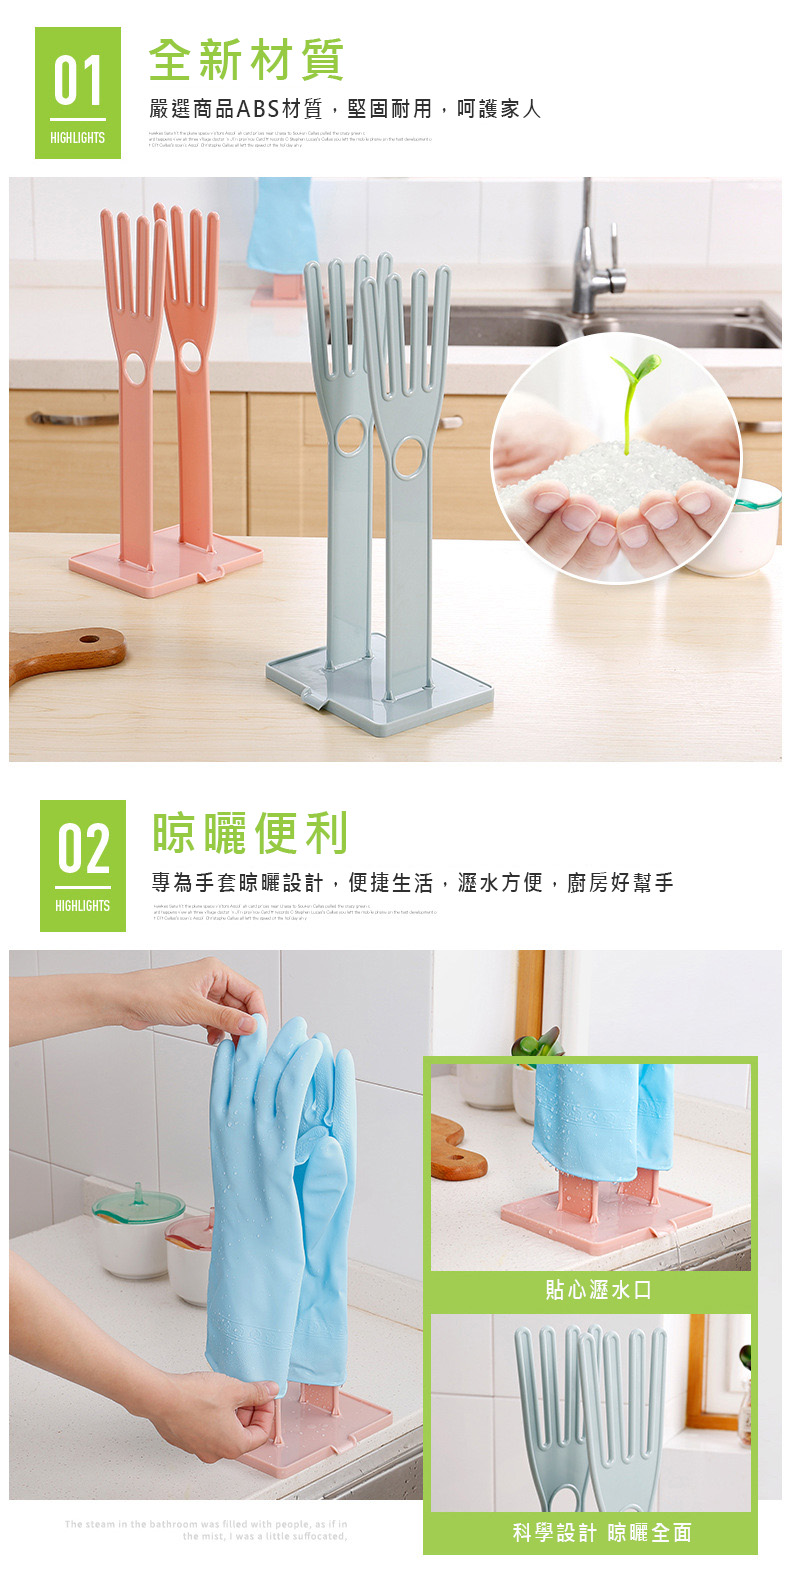 居家可拆式手套抹布曬架 創意多功能廚房用品置物架 手套收納架